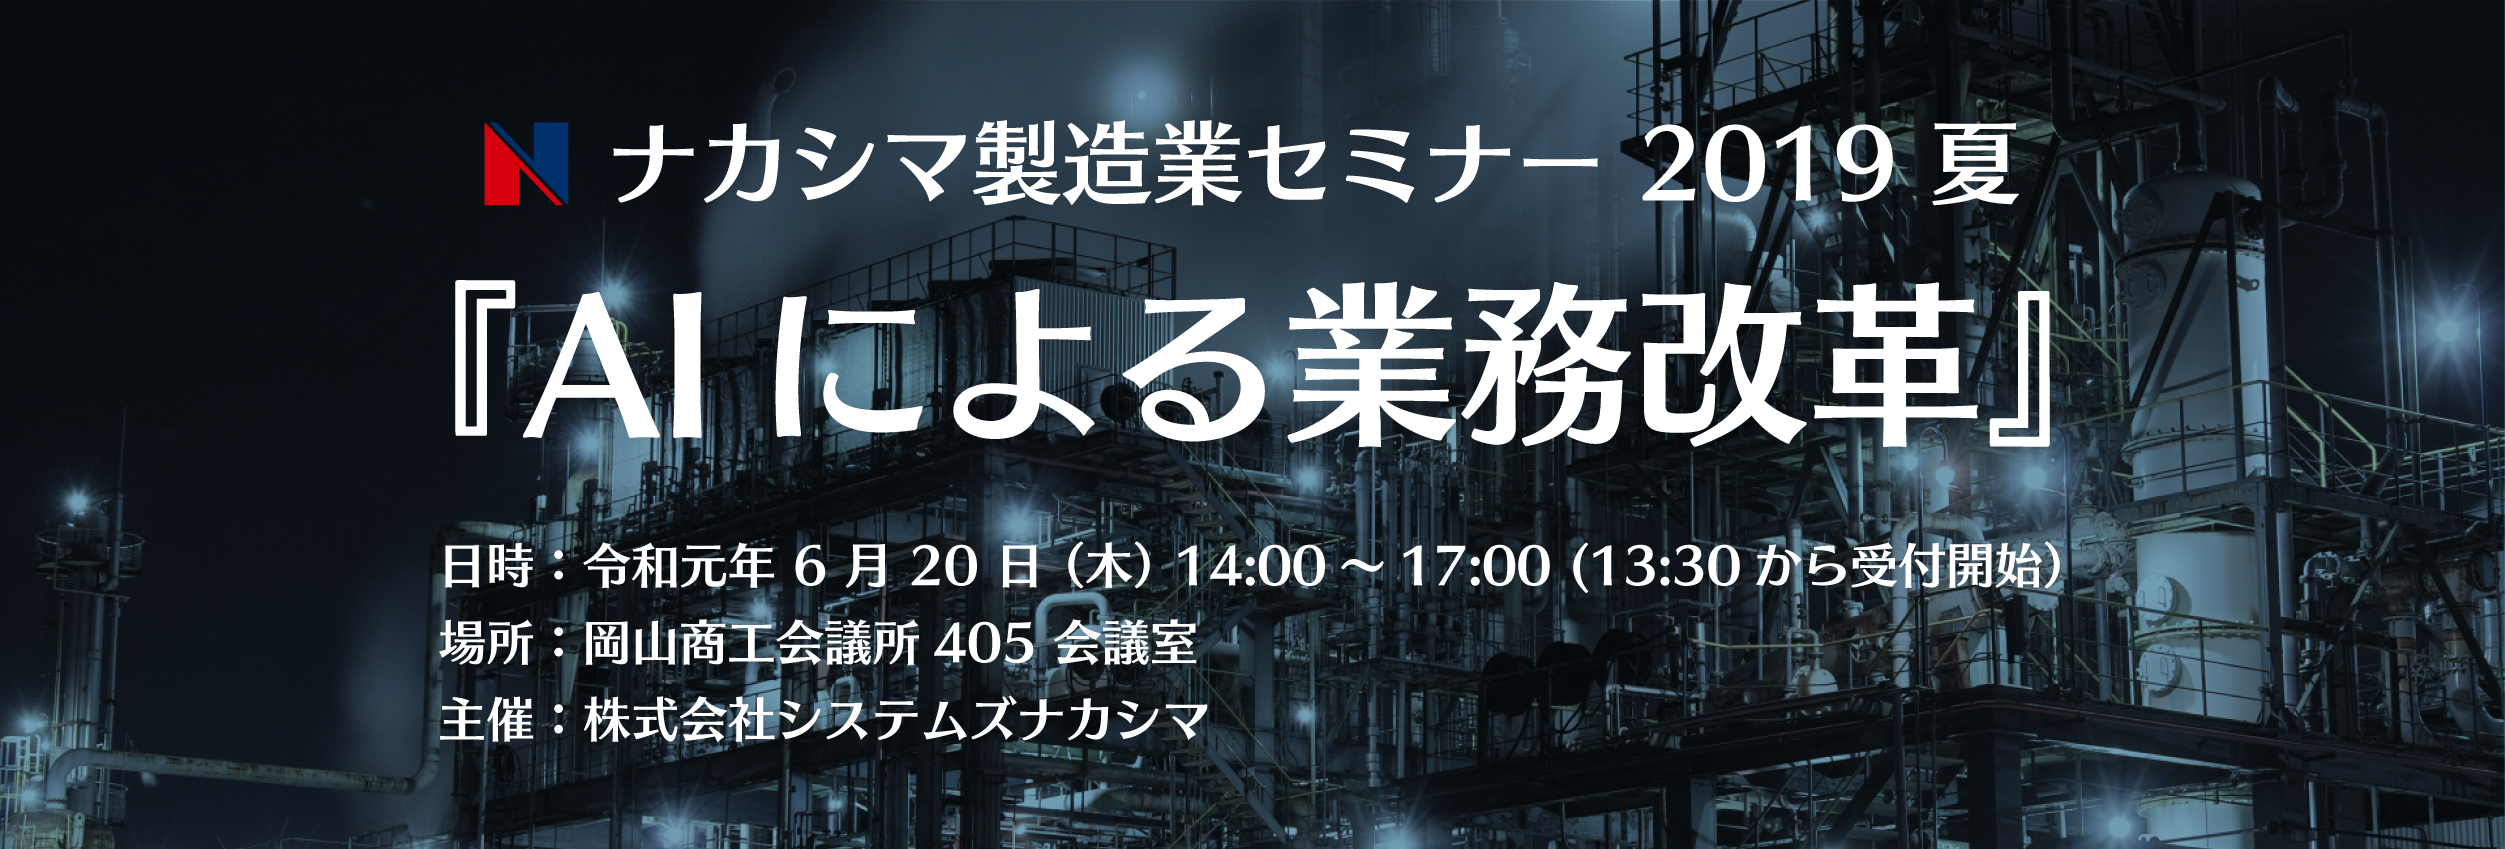 ナカシマ製造業セミナーセミナー 2019 夏